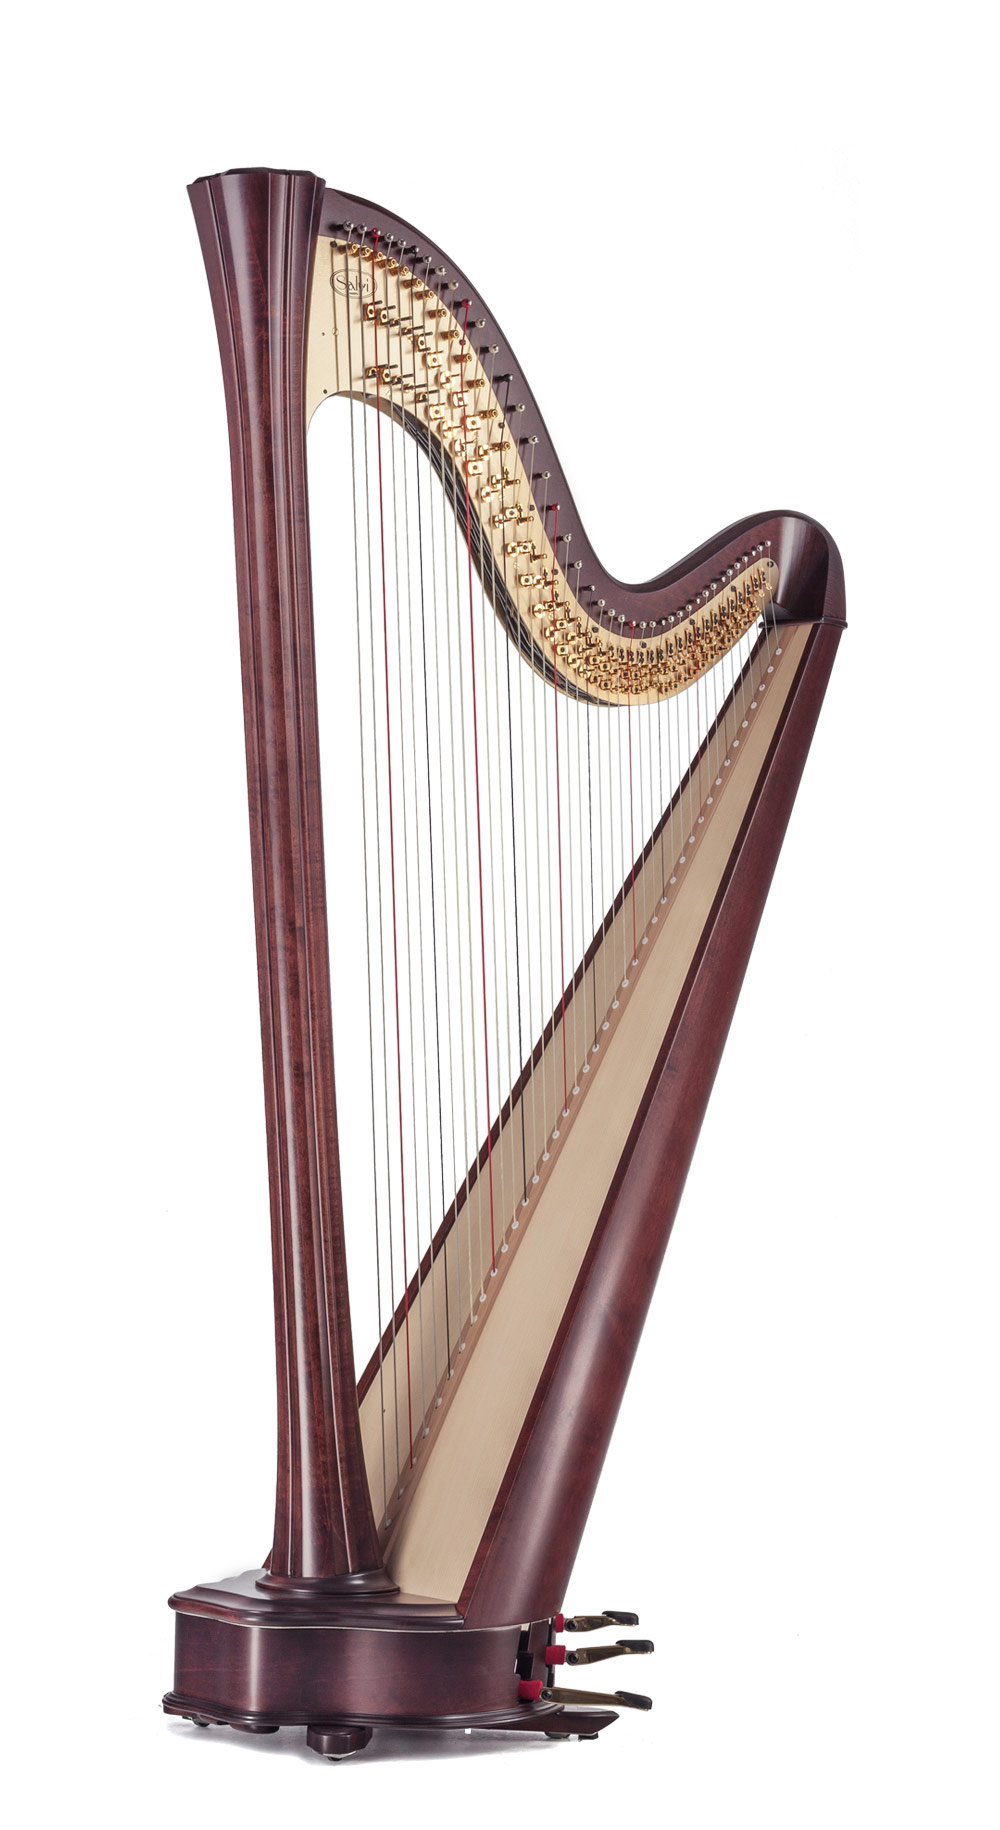 Bild der Harfe Daphne 40